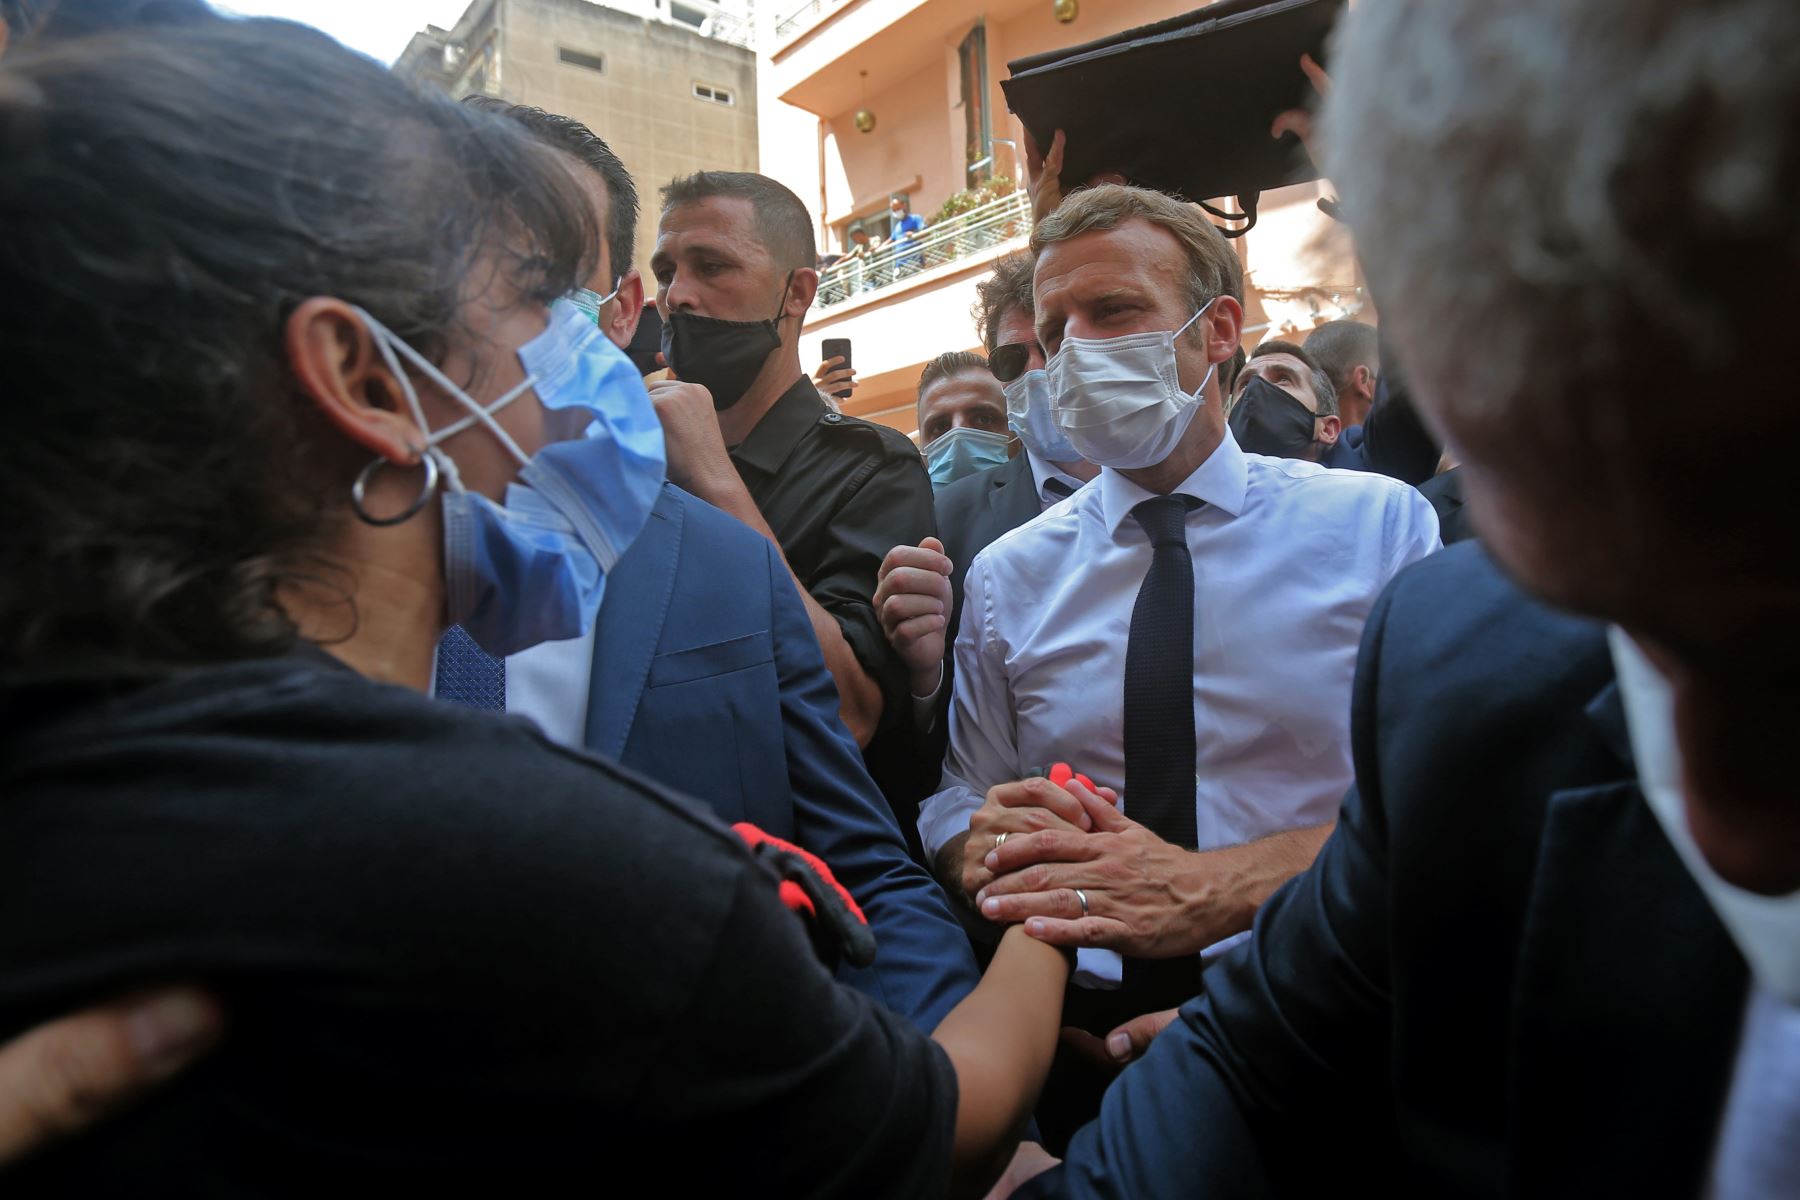 El presidente francés, Emmanuel Macron, consuela a un joven libanés durante una visita al barrio de Gemmayzeh, que ha sufrido grandes daños debido a una explosión masiva en la capital libanesa.
Foto: AFP